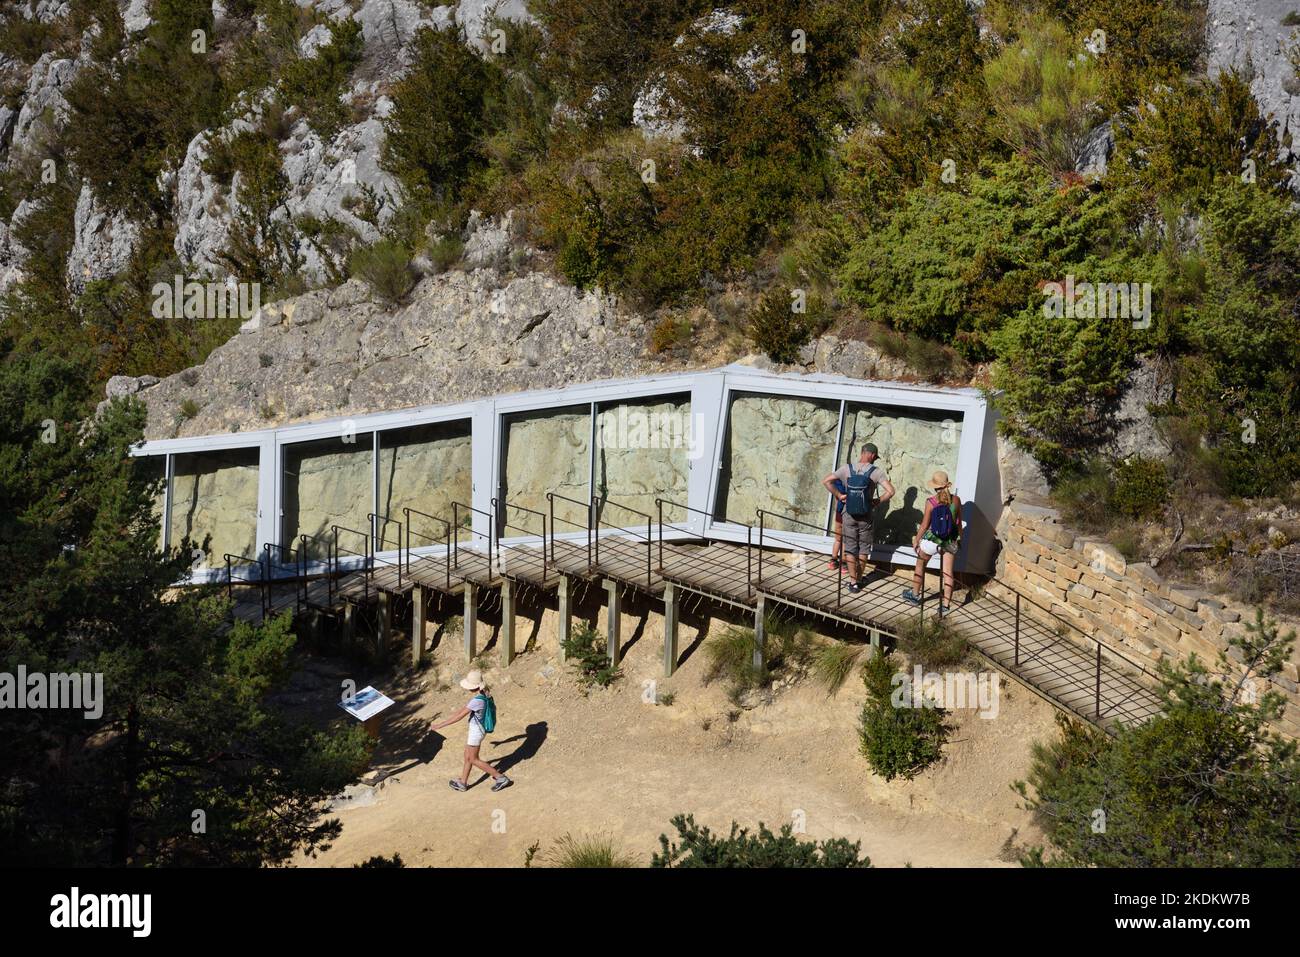 Les touristes en famille visitent le site protégé de sirenia préhistorique fossilisé, ou les vaches de mer, ancêtres des dugong et des lamantins dans la vallée de Sirenia Provence France Banque D'Images